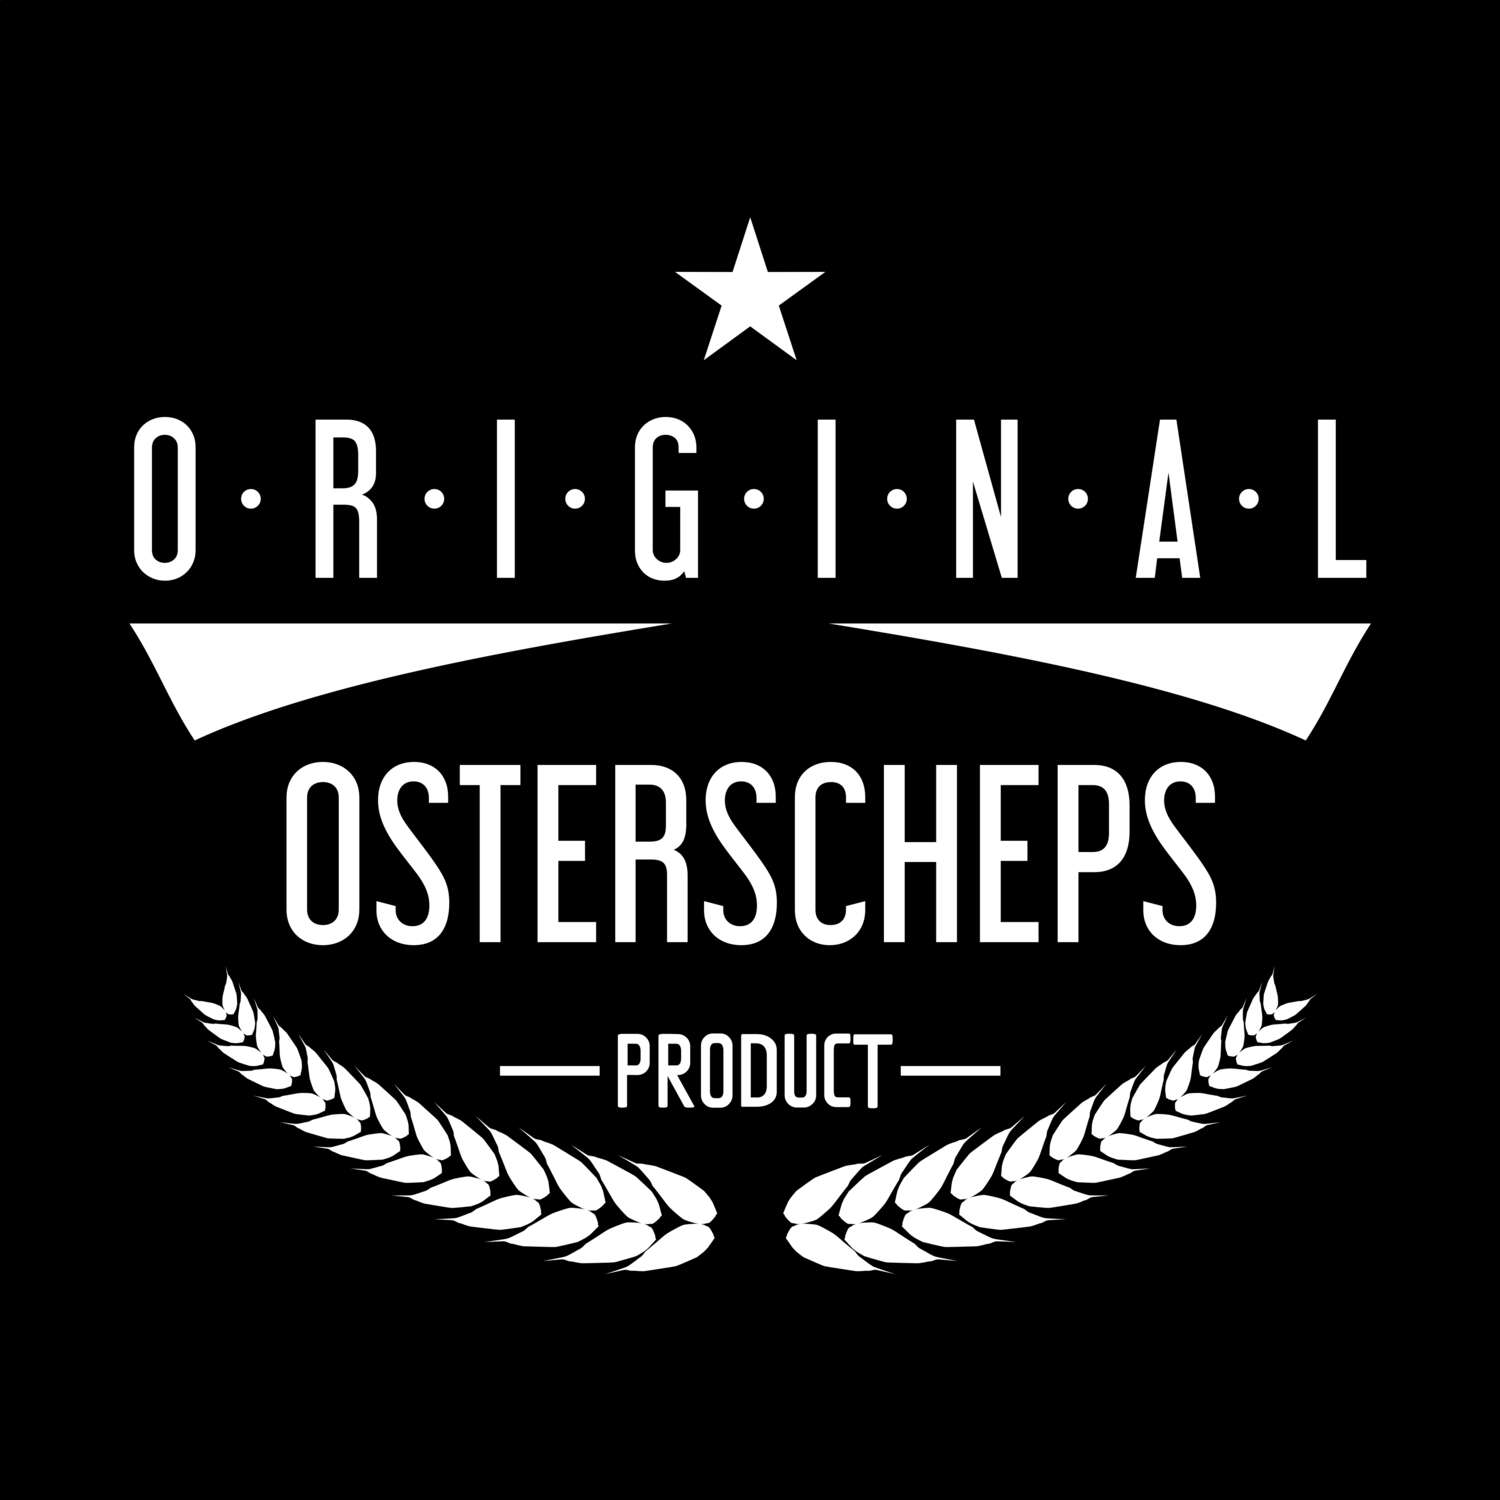 Osterscheps T-Shirt »Original Product«